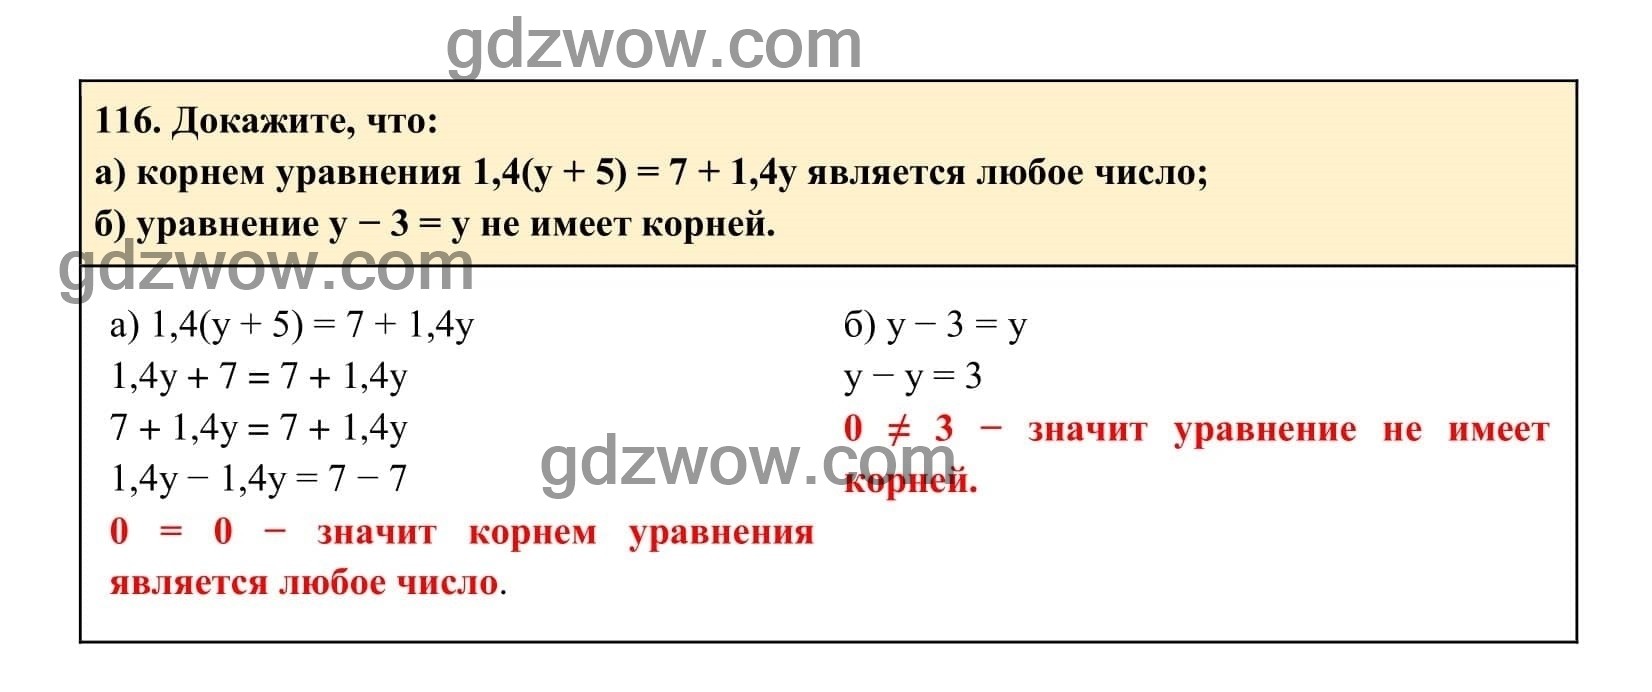 Упражнение 116 - ГДЗ по Алгебре 7 класс Учебник Макарычев (решебник) - GDZwow